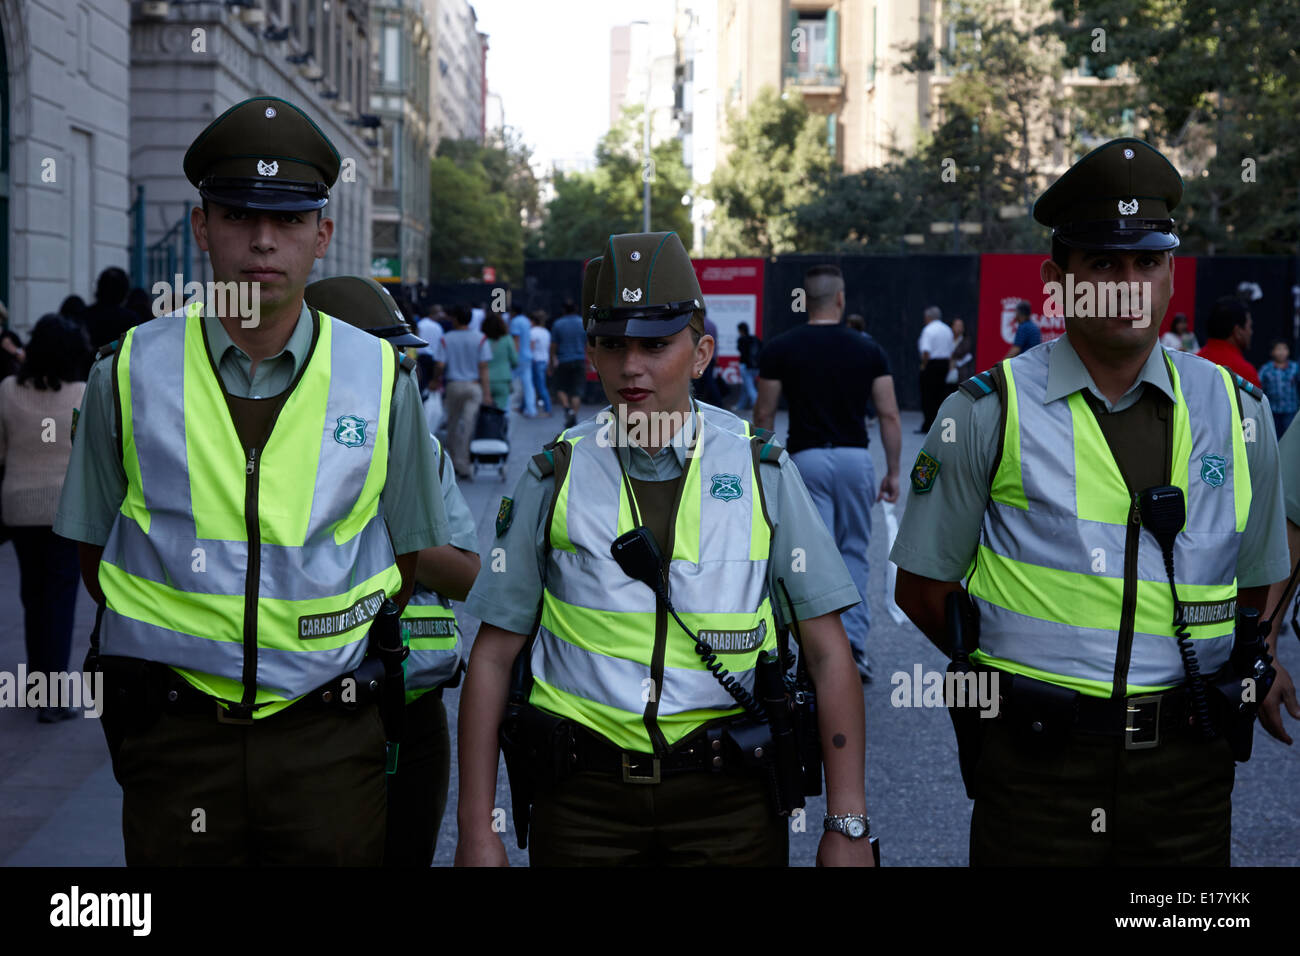 Les carabiniers du Chili des agents de la police nationale au centre-ville de Santiago du Chili Banque D'Images